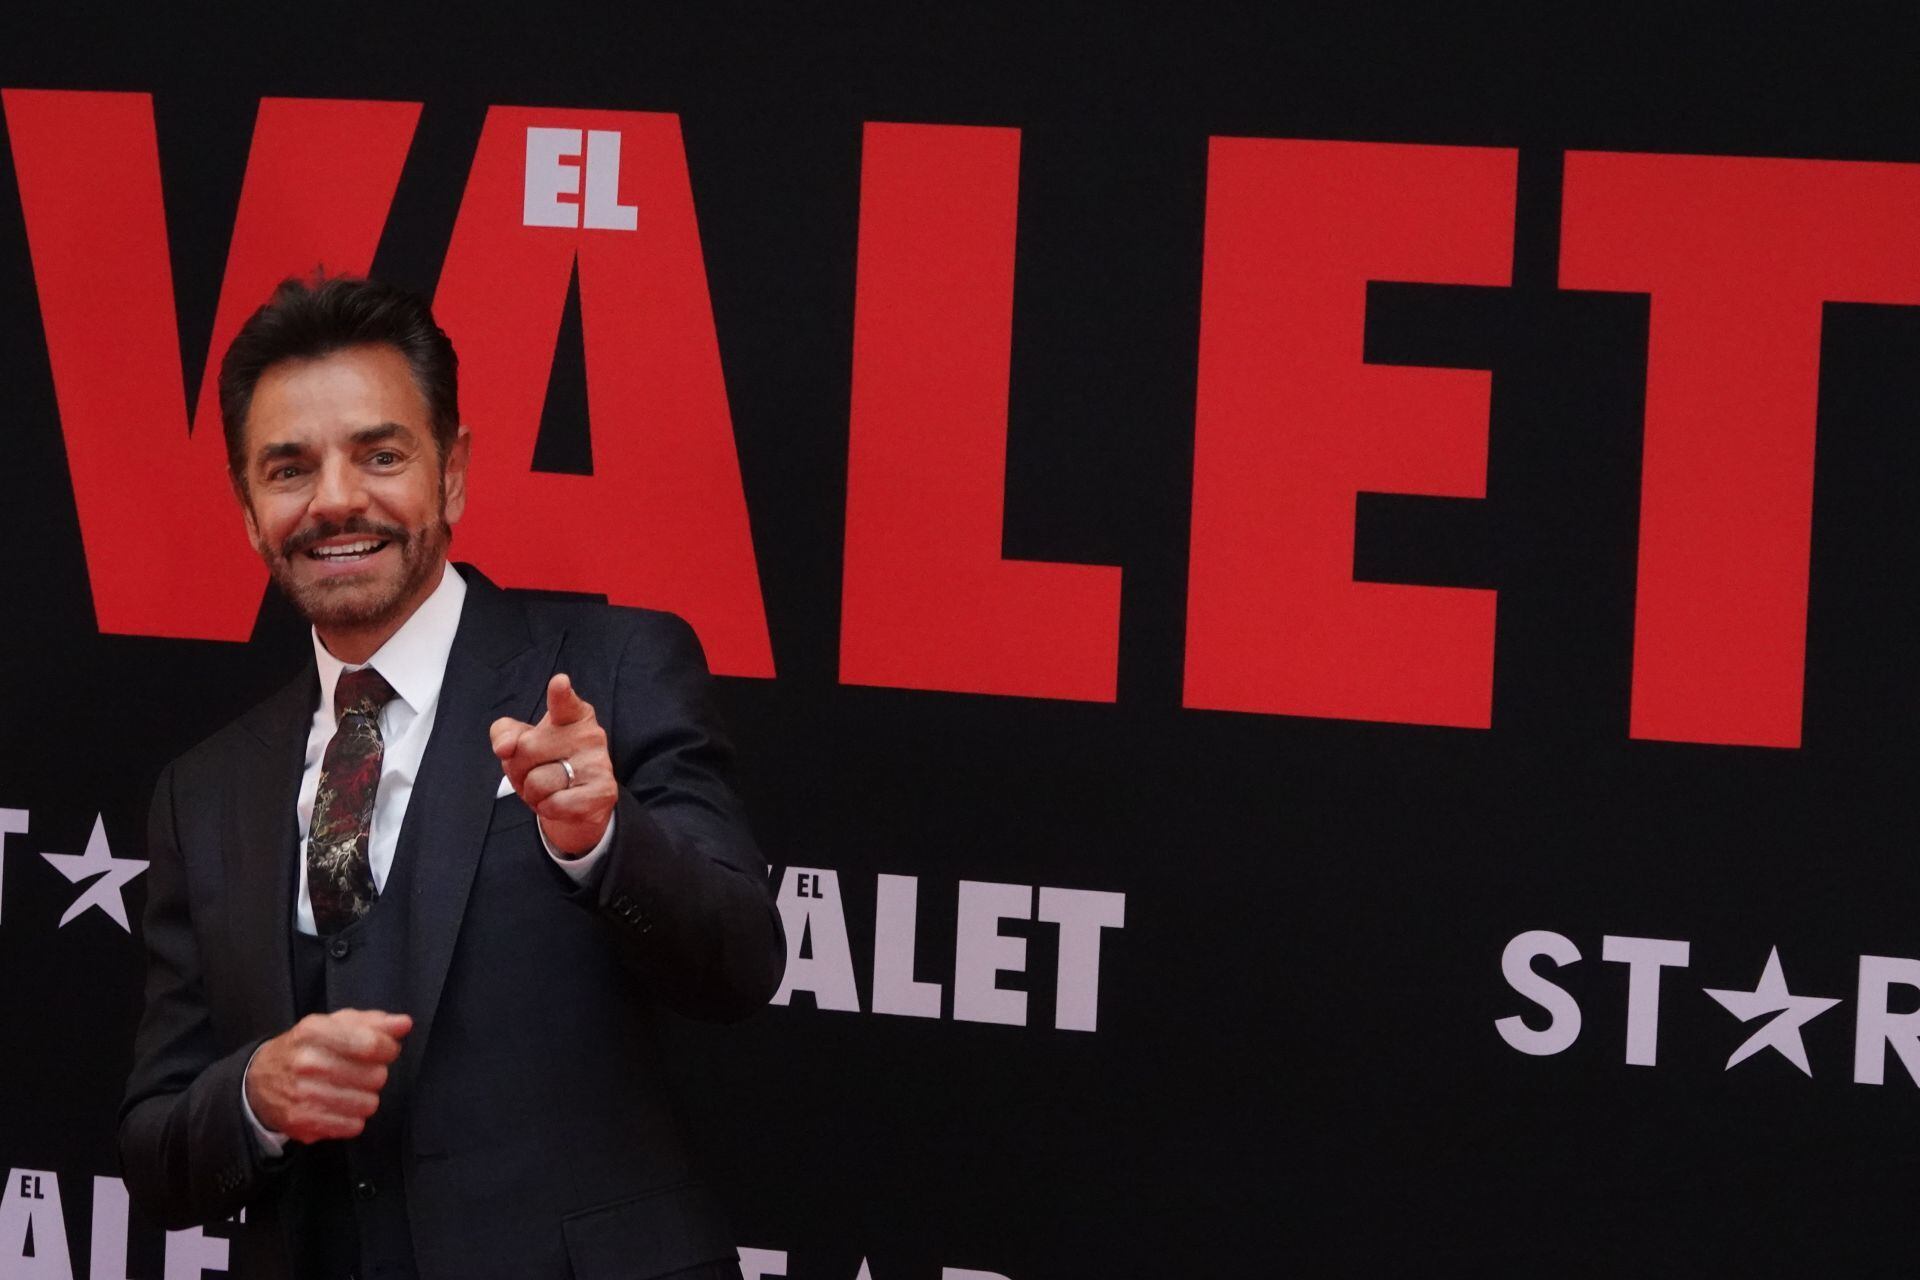 ¿De qué trata ‘The Valet’, la nueva película de Eugenio Derbez?